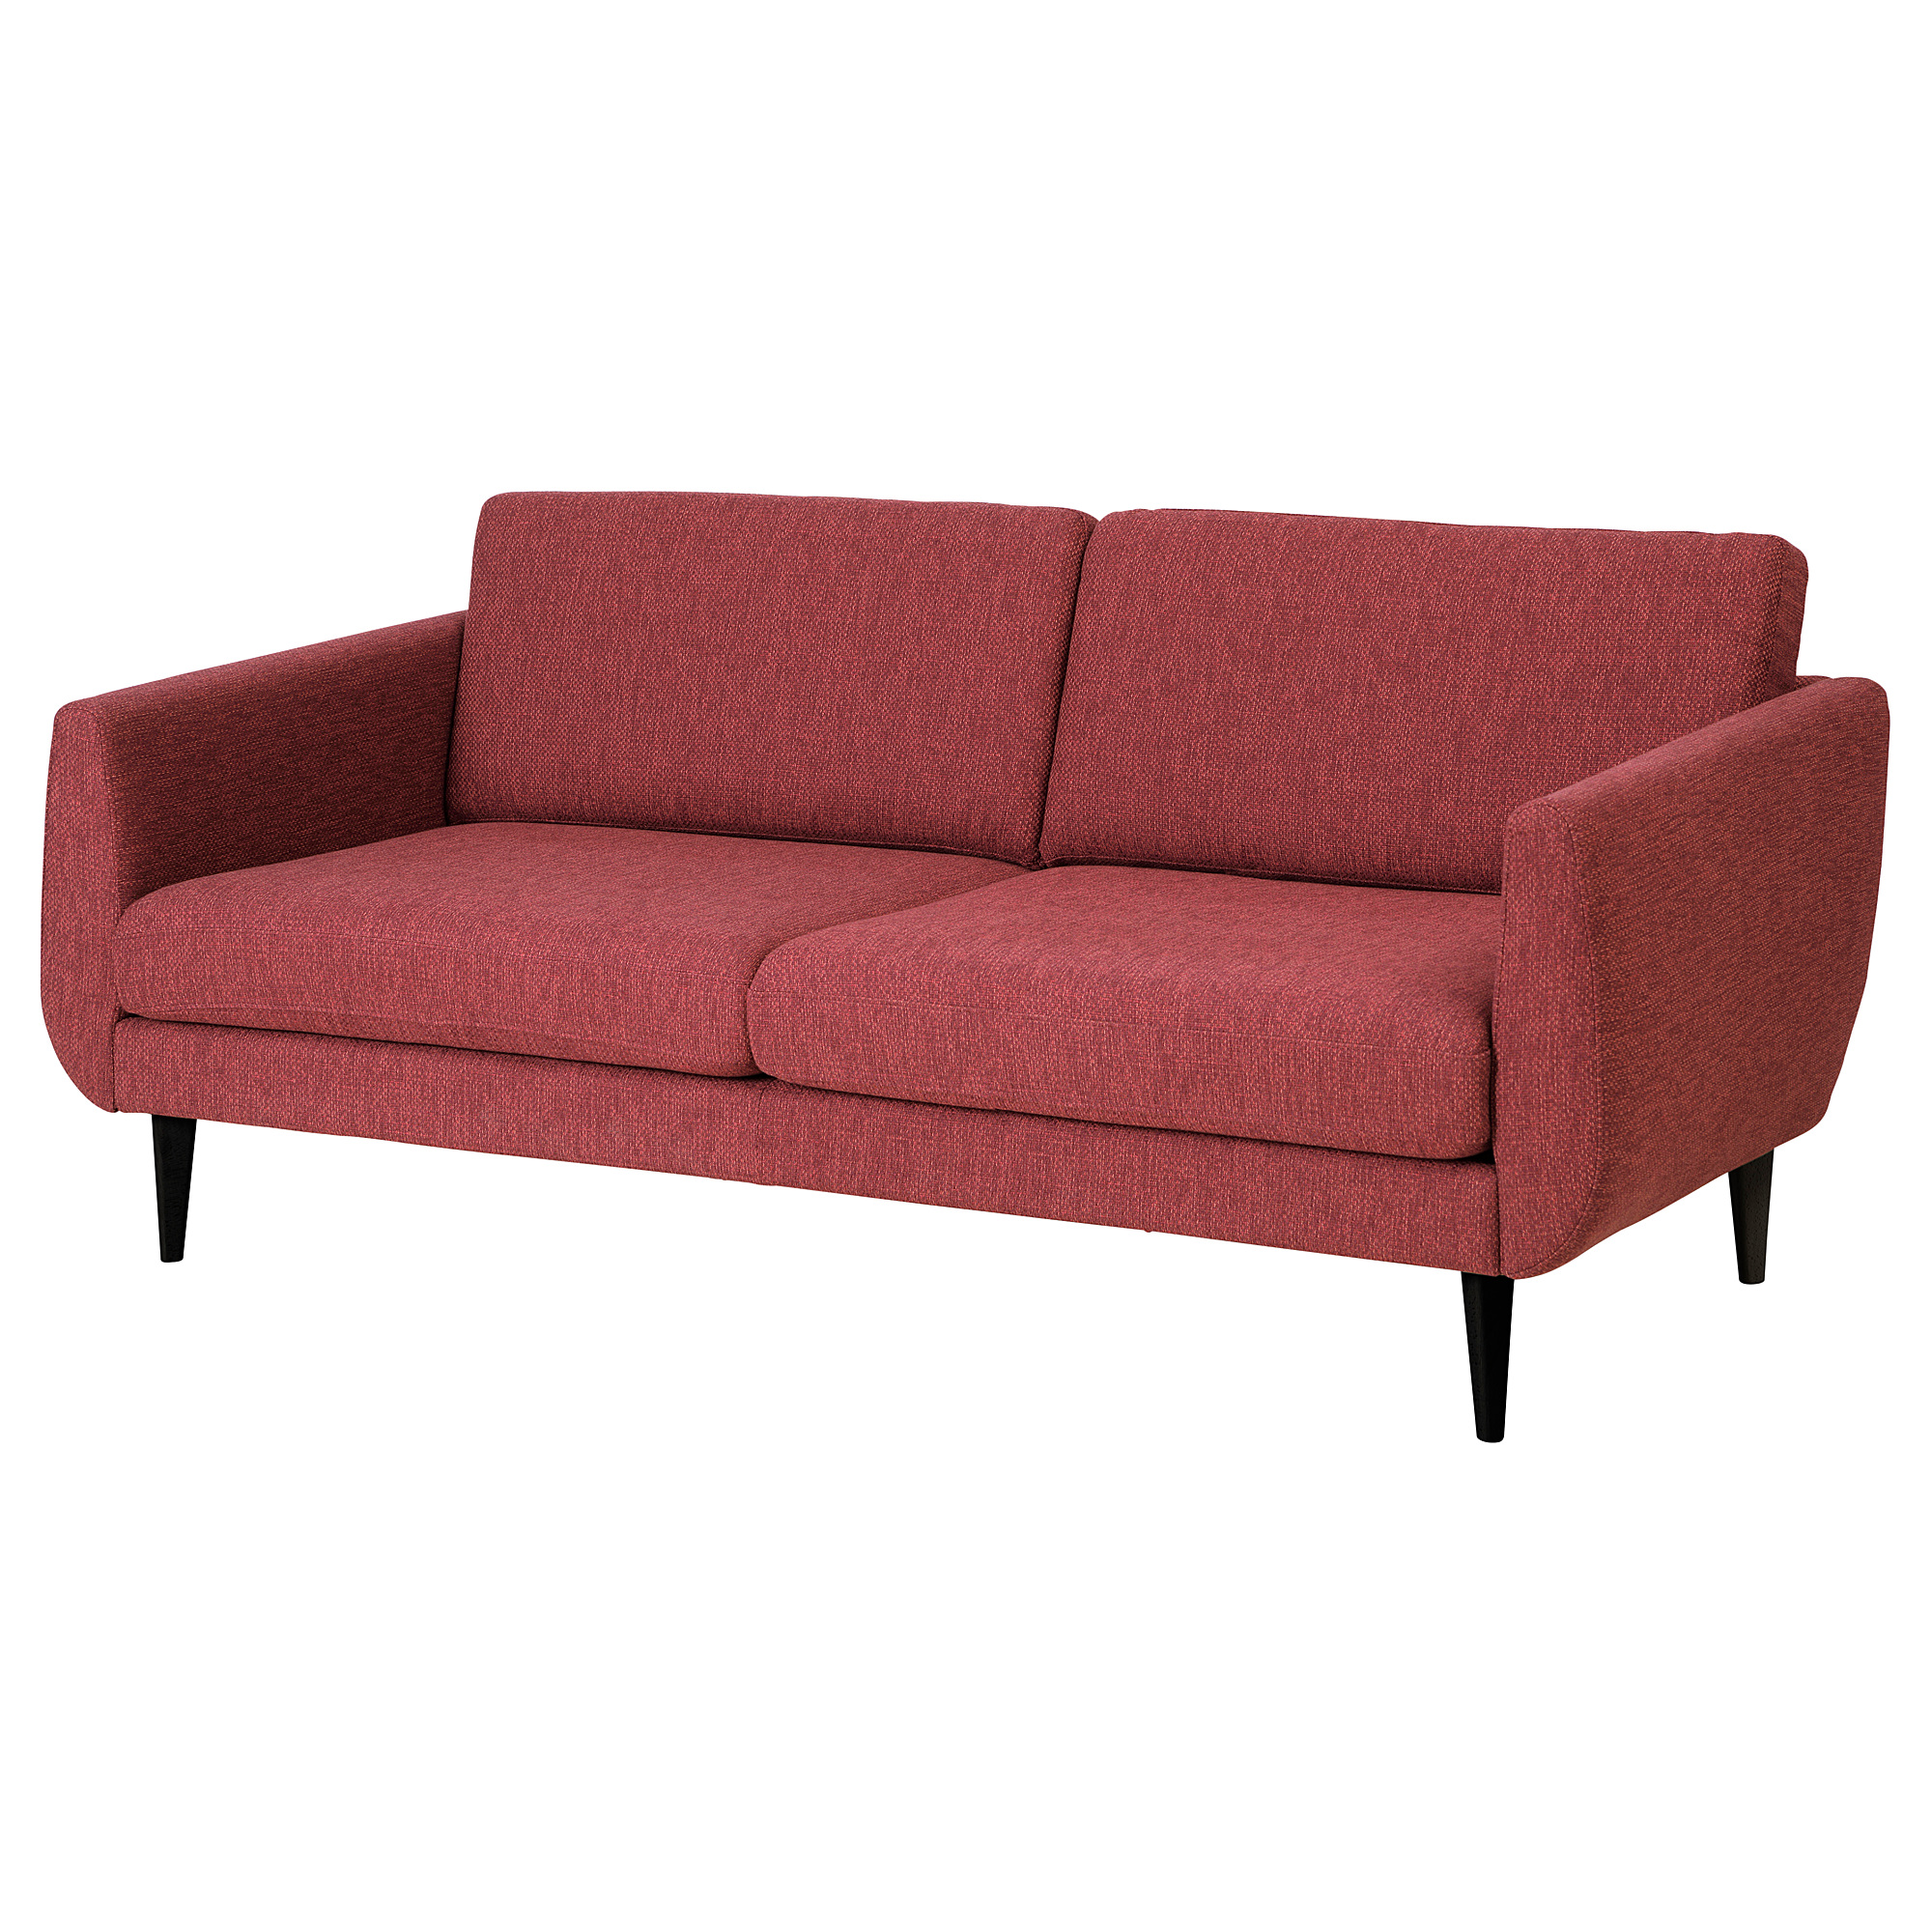 SMEDSTORP 3-seat sofa